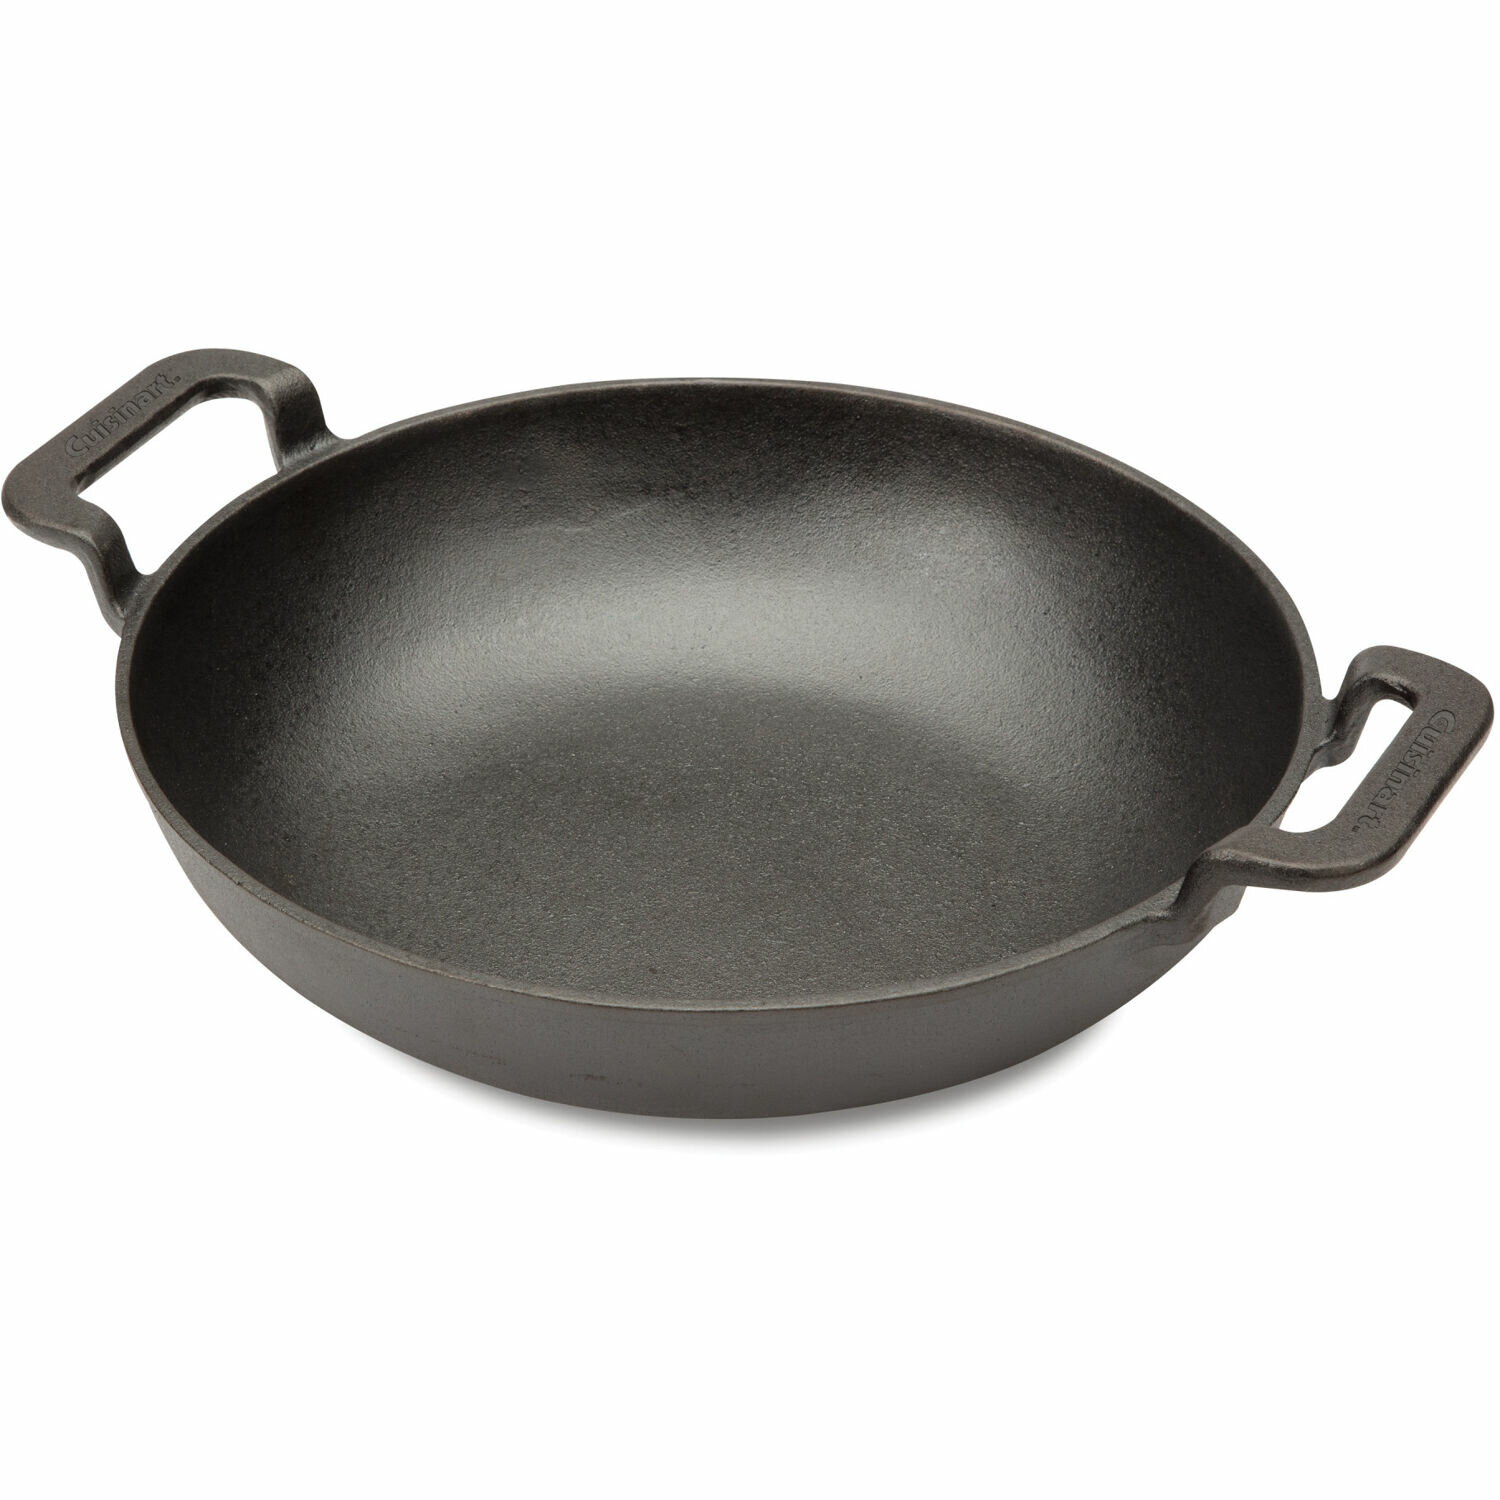 https://assets.wfcdn.com/im/24632333/compr-r85/1213/121300105/cuisinart-10-non-stick-enameled-cast-iron-wok.jpg